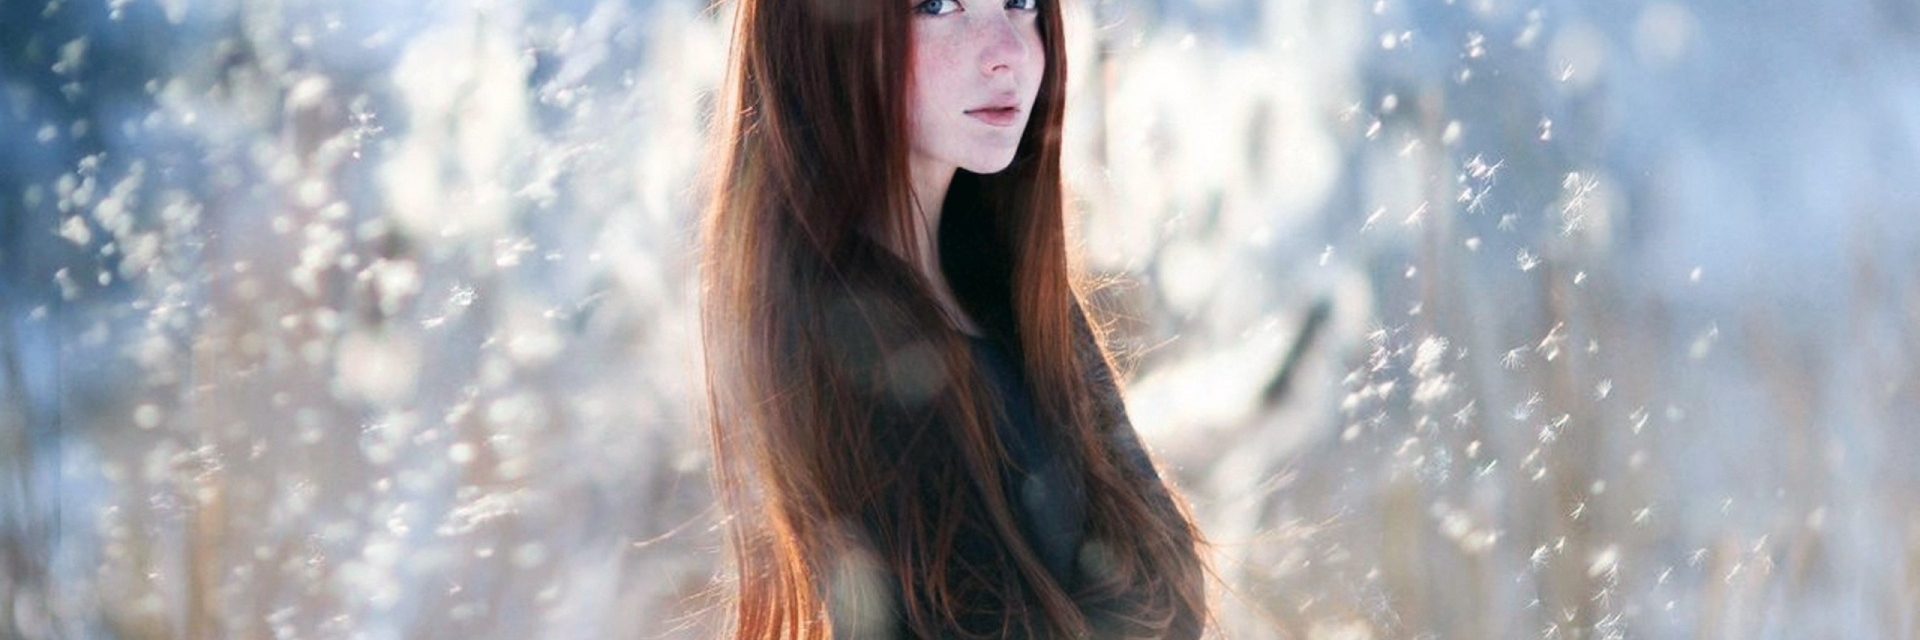 Девушка. Зимний портрет. Каштановые волосы у девушек. Девушка с длинными каштановыми волосами.